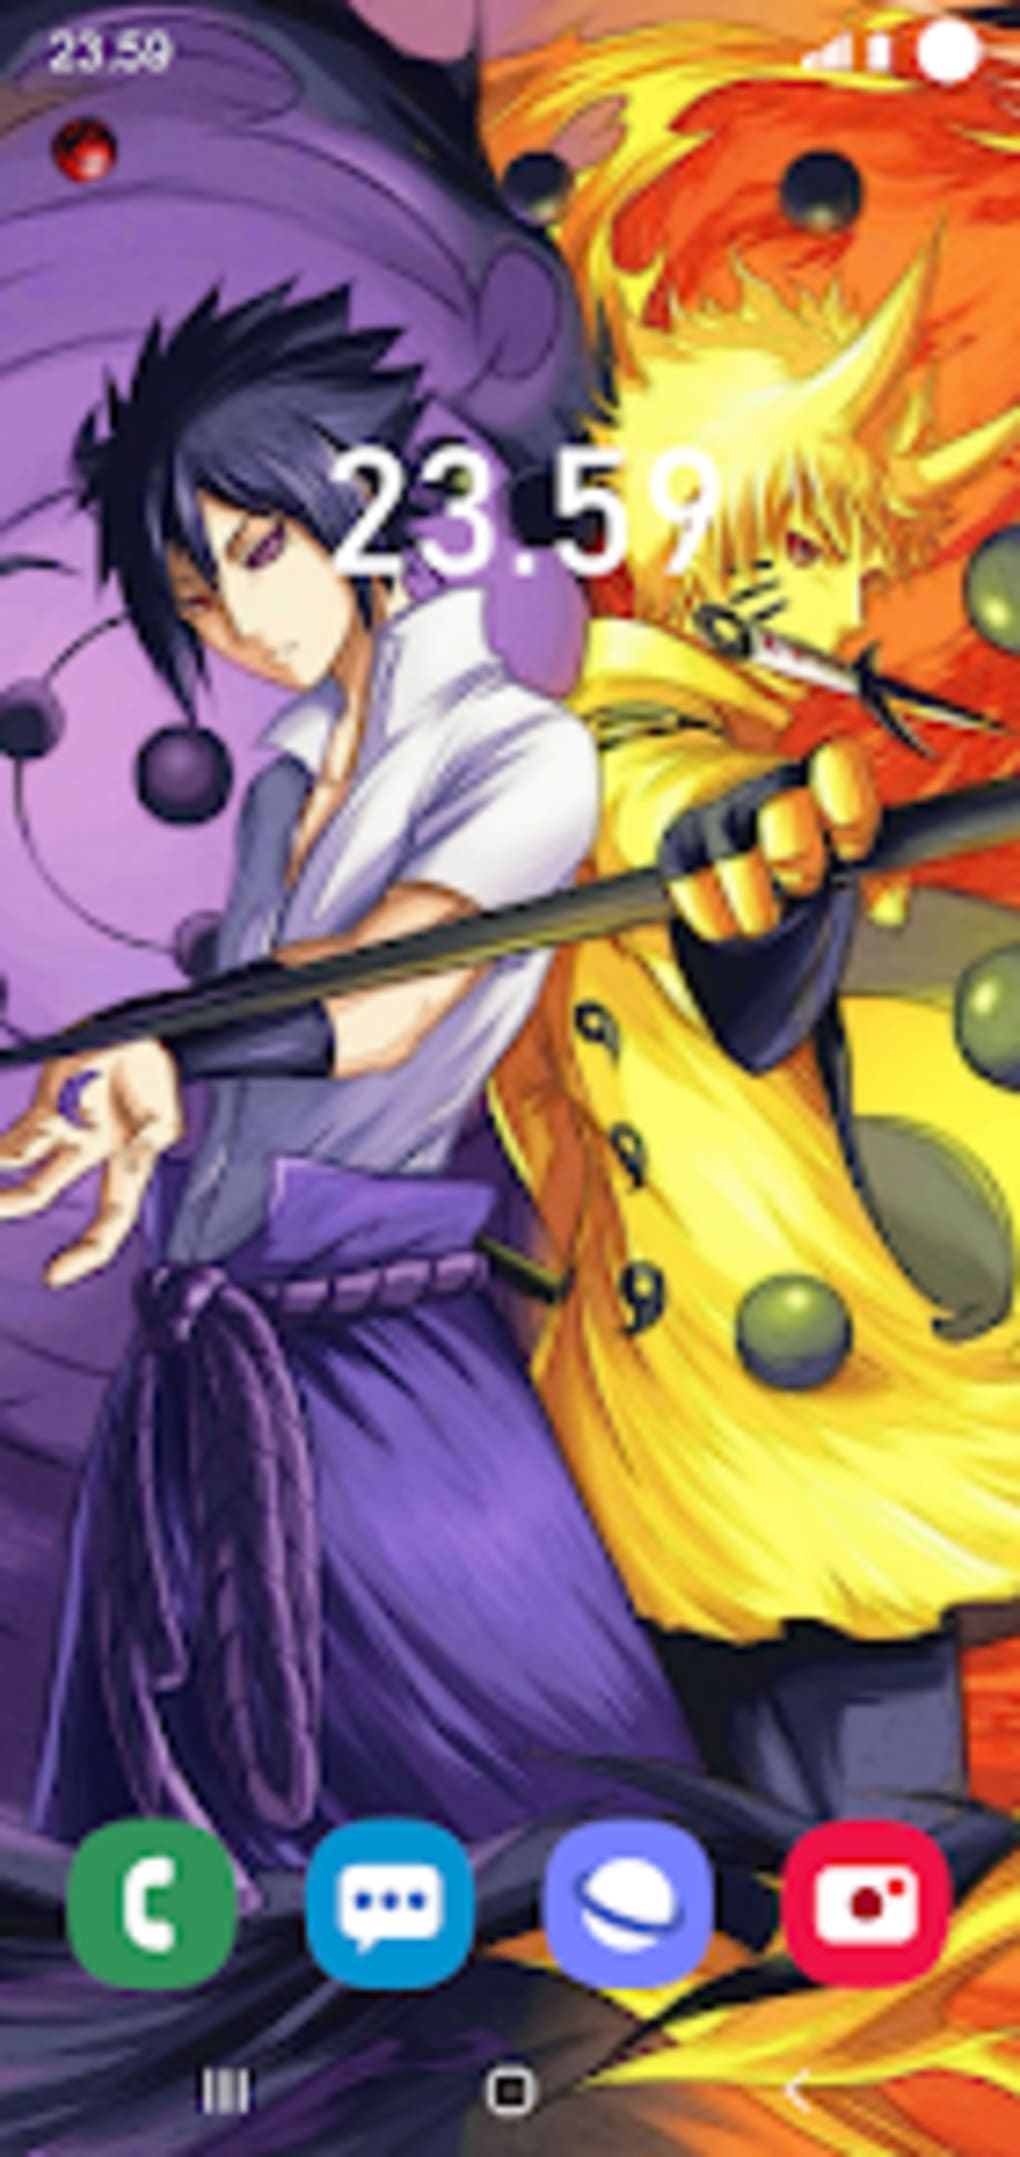 HD wallpaper: Anime, Naruto, Sasuke Uchiha | Wallpaper Flare